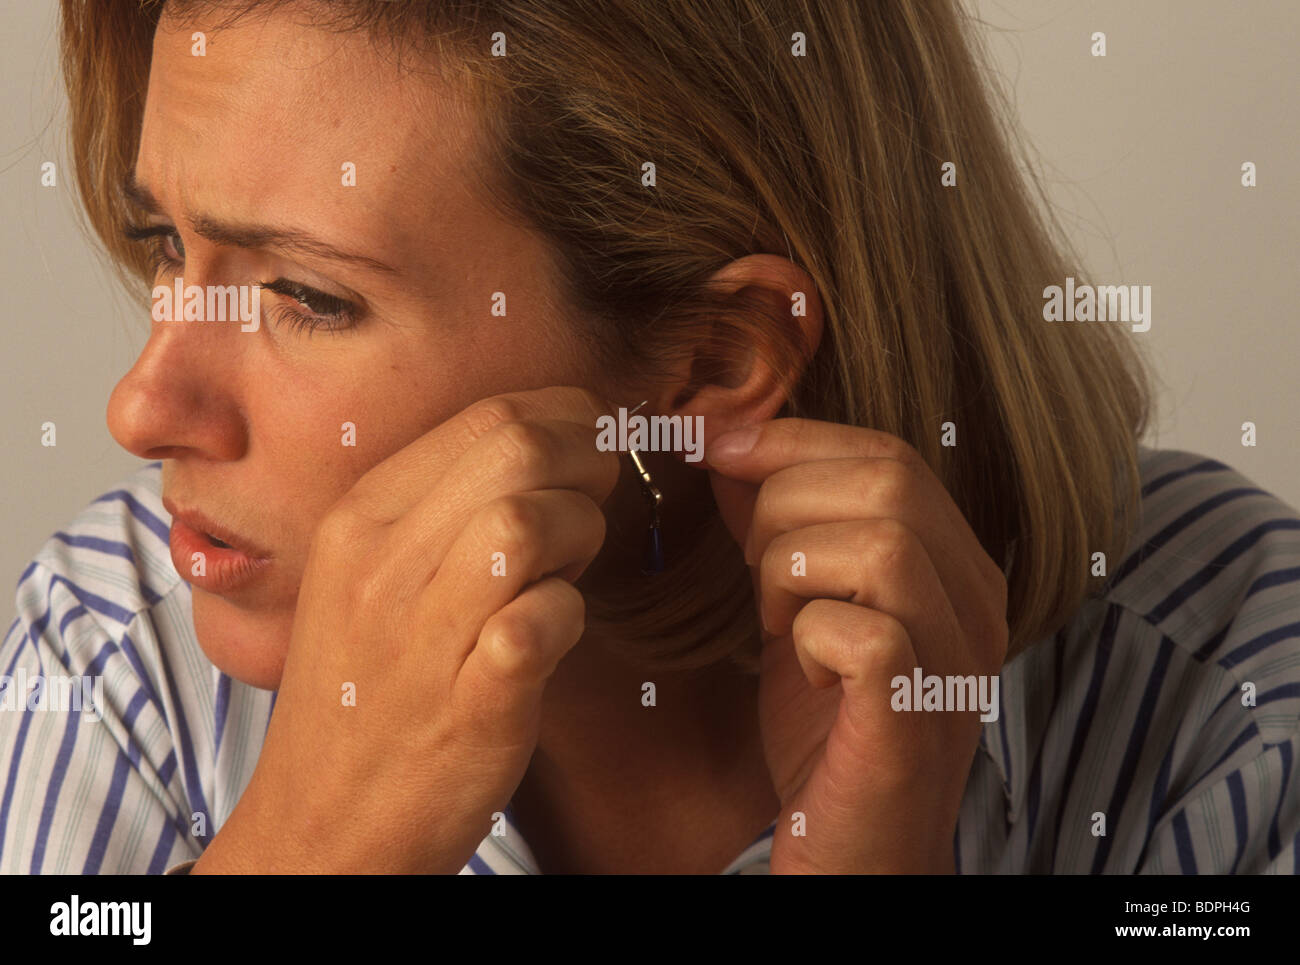 Femme avec une inflammation de l'oreille qui démange souffrant d'une  allergie au nickel Photo Stock - Alamy